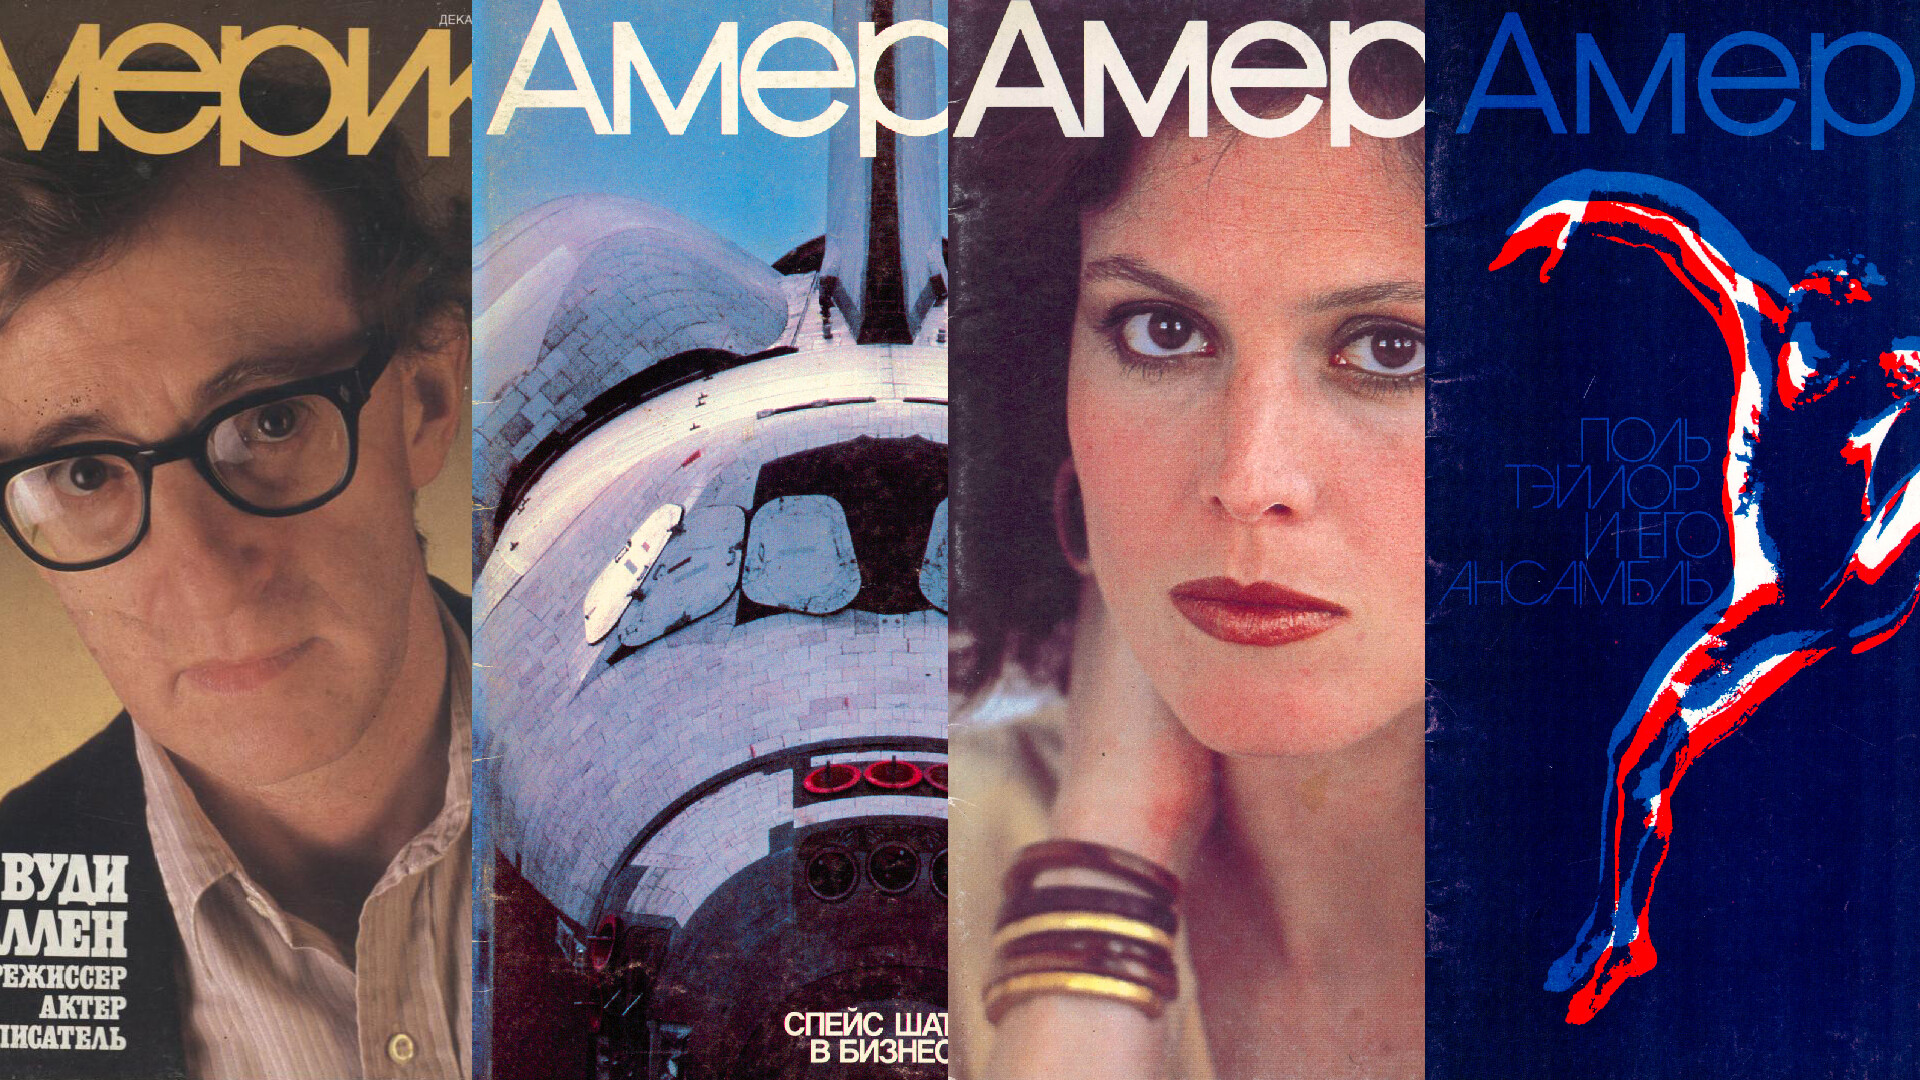  "Америка", 1986-12 / 1983-09 / 1984-02 / 1983-09